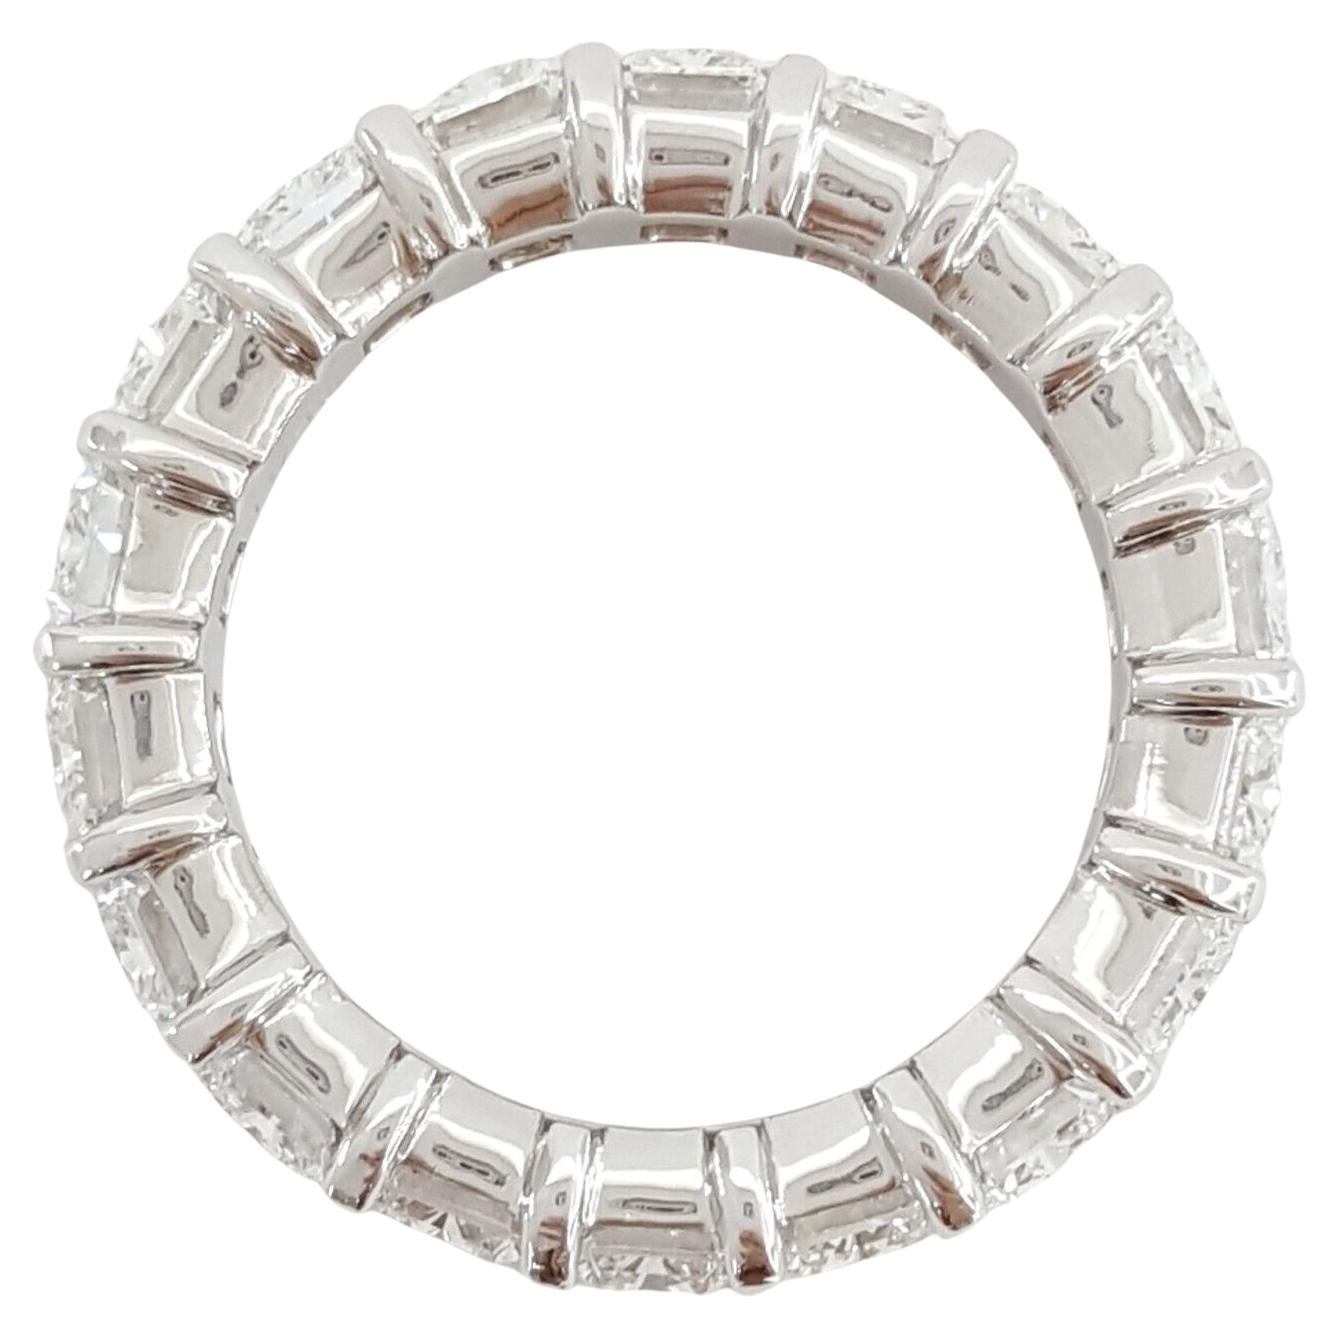  5,6 ct Gesamtgewicht Rechteckige Radiant Cut Diamond Platinum Full Circle Eternity Hochzeit Jahrestag Ring.



 Der Ring wiegt 7,6 Gramm, Größe 5, es gibt 18 Natural Ideal Radiant Cut Diamanten mit einem Gesamtgewicht von 5,6 ct, D-F in Farbe,